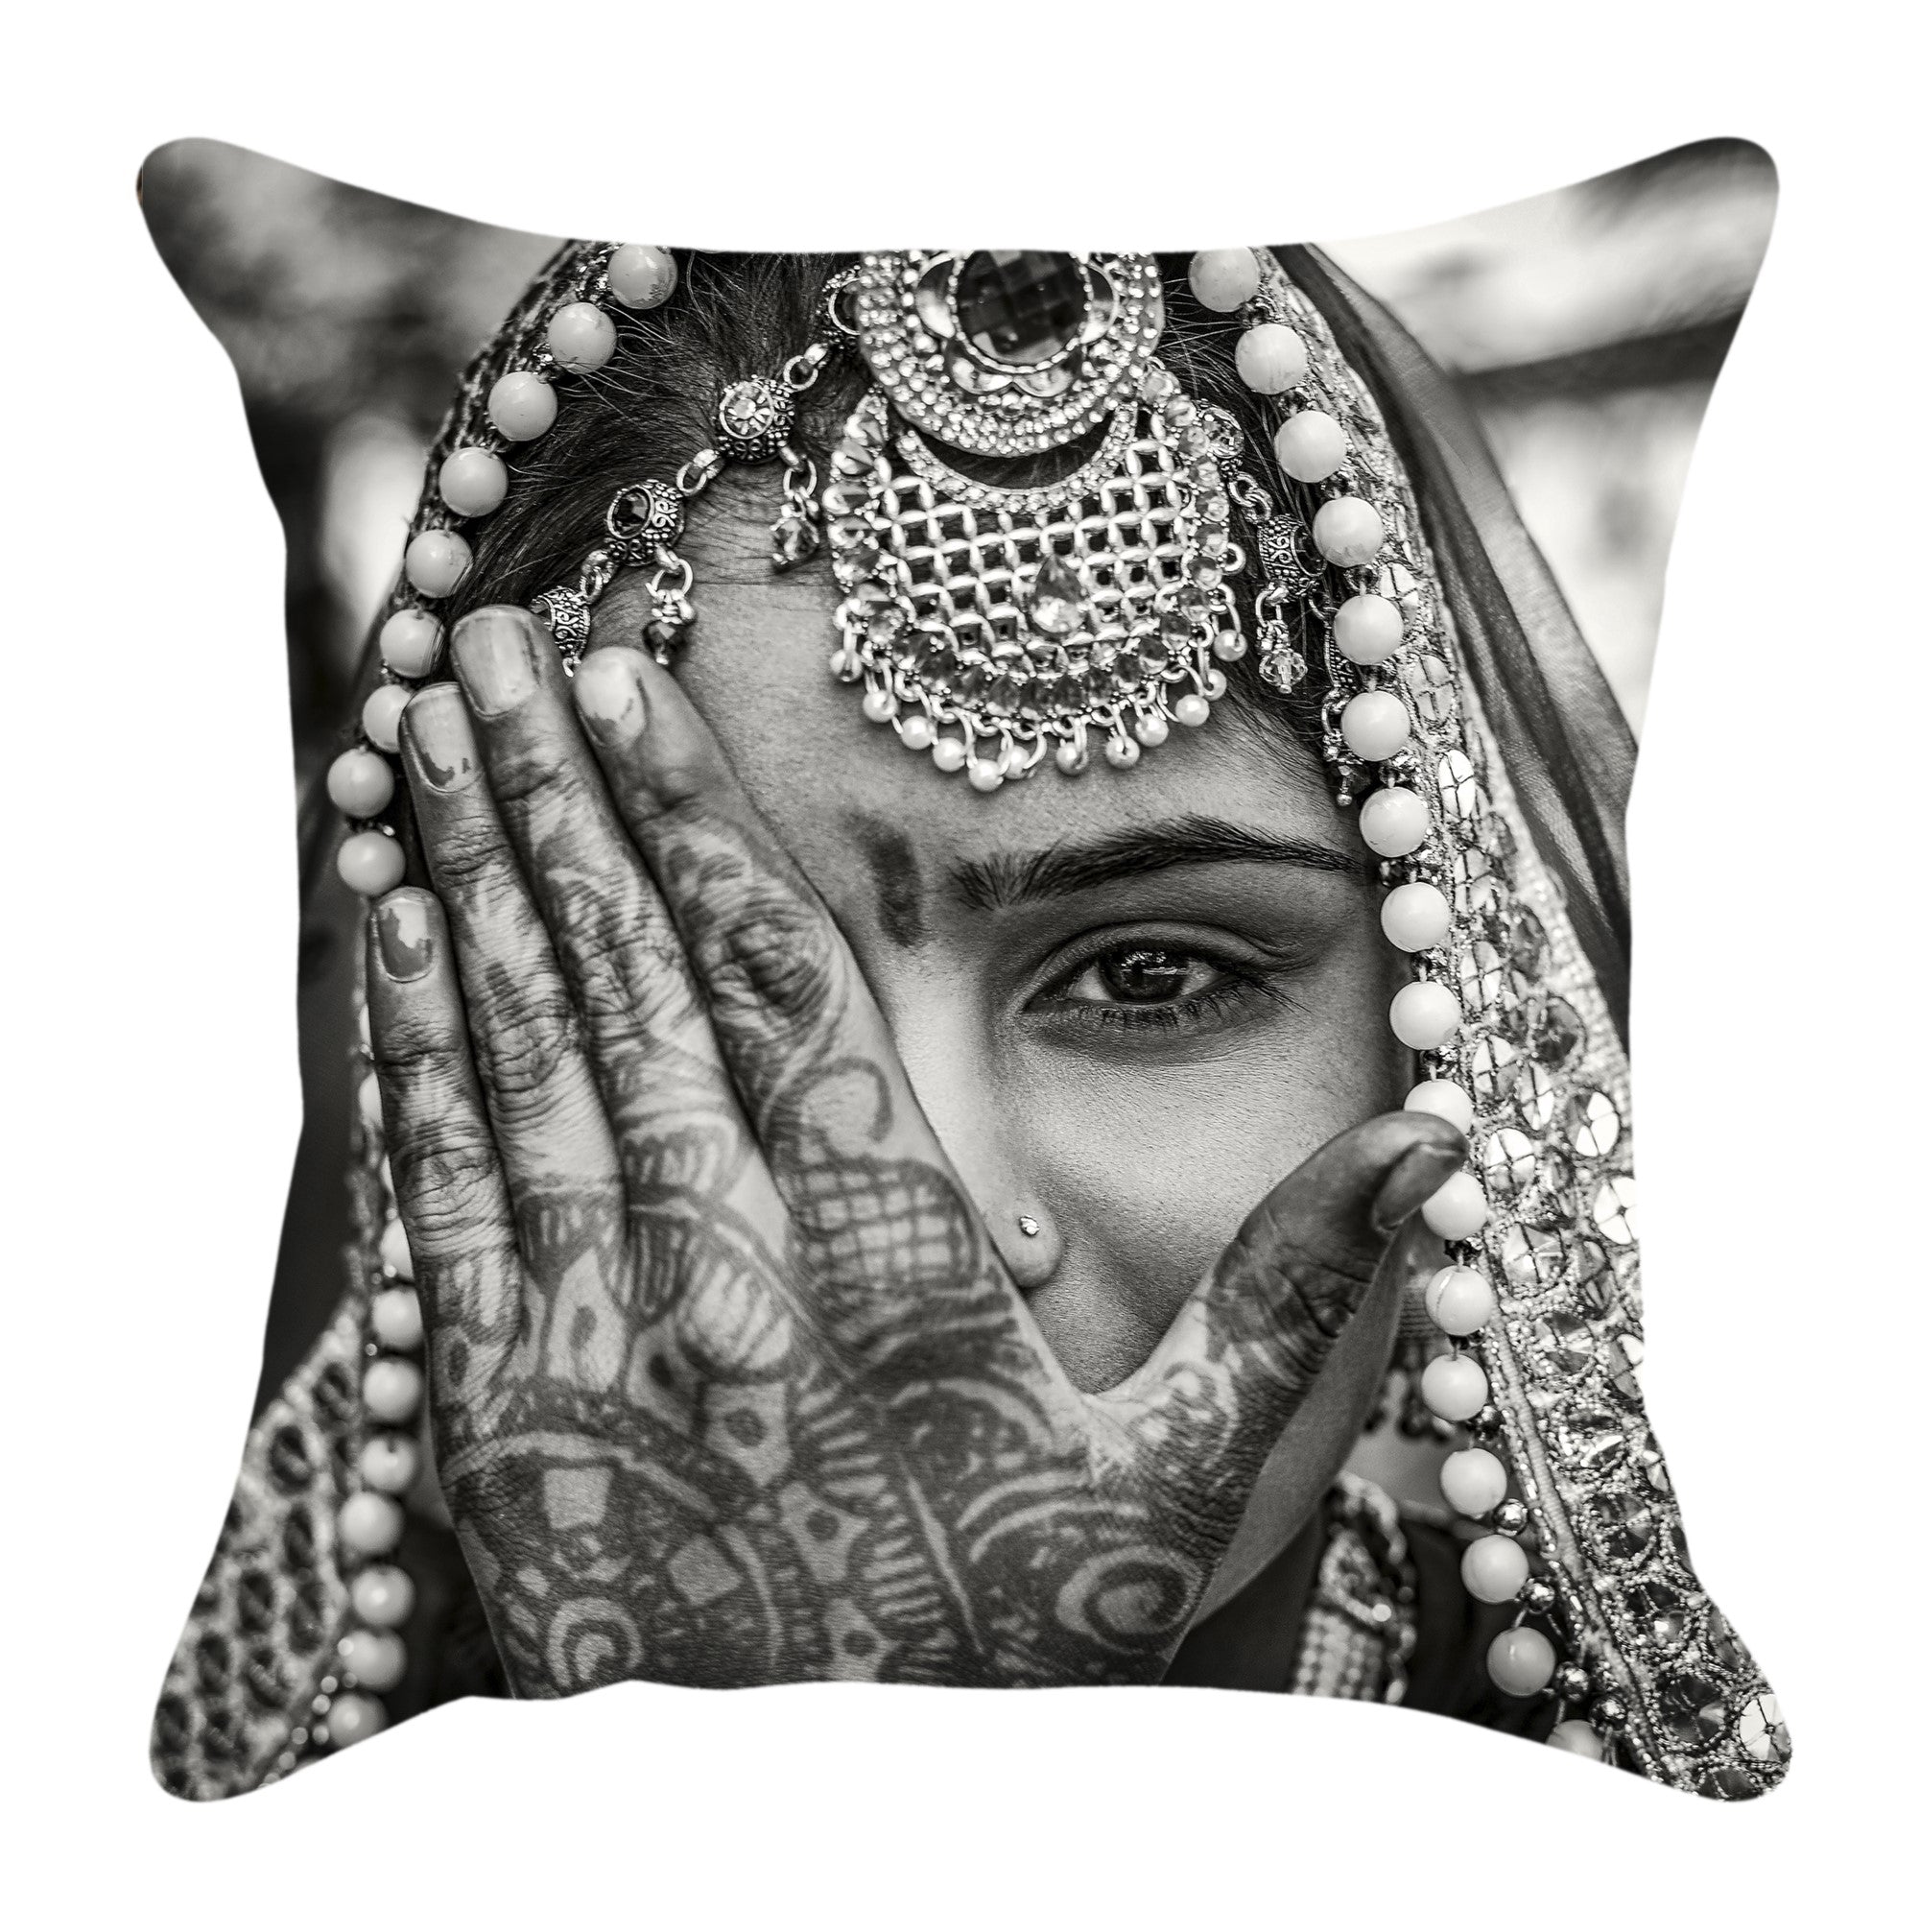 Cushion - Bhanu Indian Princess - 55 x 55 cm